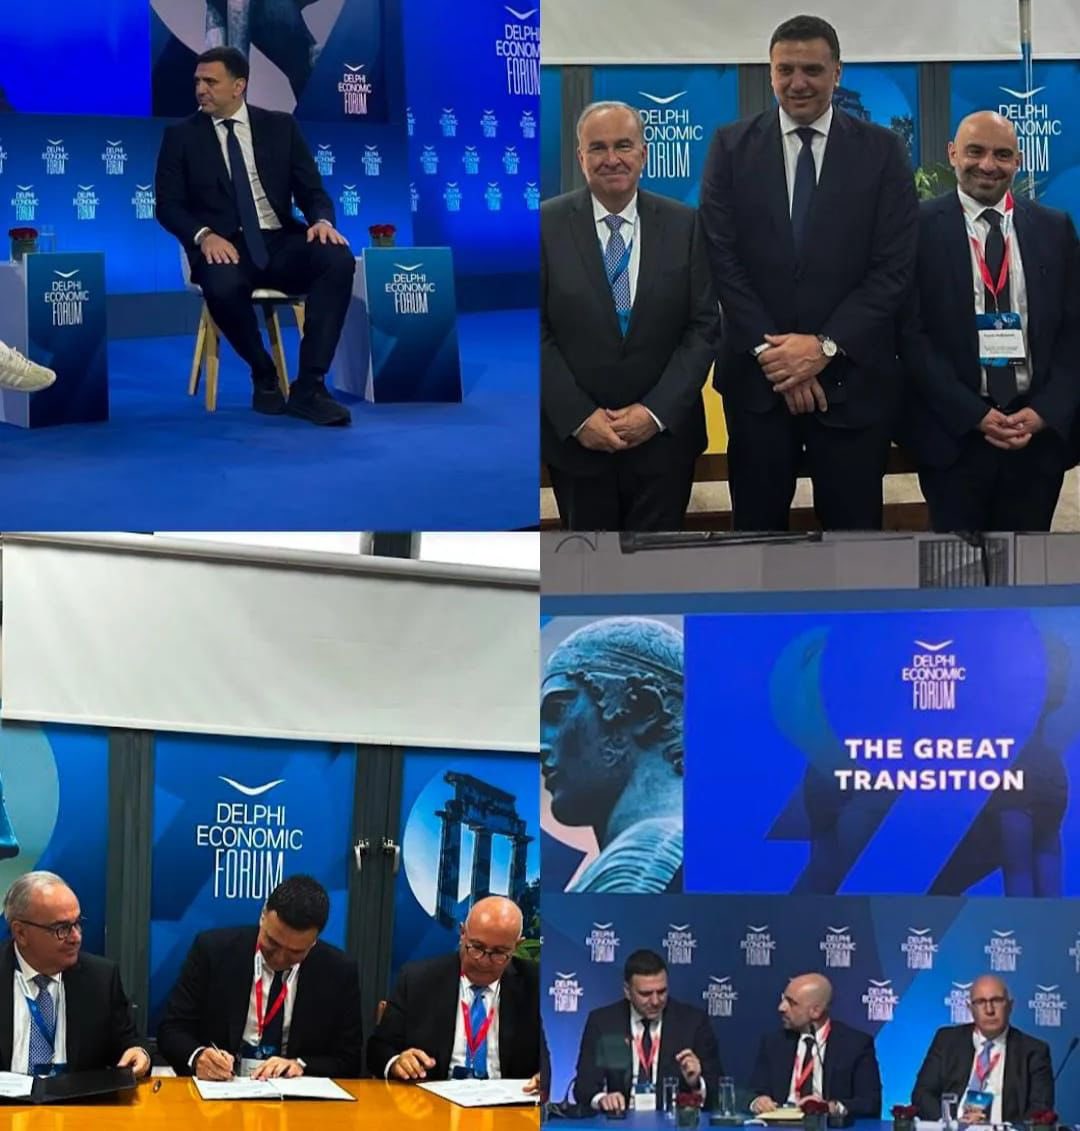 Στη διάρκεια του Delphi Economic Forum, επιτεύχθηκαν σημαντικές συμφωνίες, οι οποίες επιταχύνουν την υλοποίηση του τεράστιου εξοπλιστικού προγράμματος ΑΙΓΙΣ, ενώ παράλληλα καταστούν τη χώρα πιο έτοιμη ενόψει της μάχης με την κλιματική κρίση. Είμαι περήφανος που υπογράψαμε τη 2η…